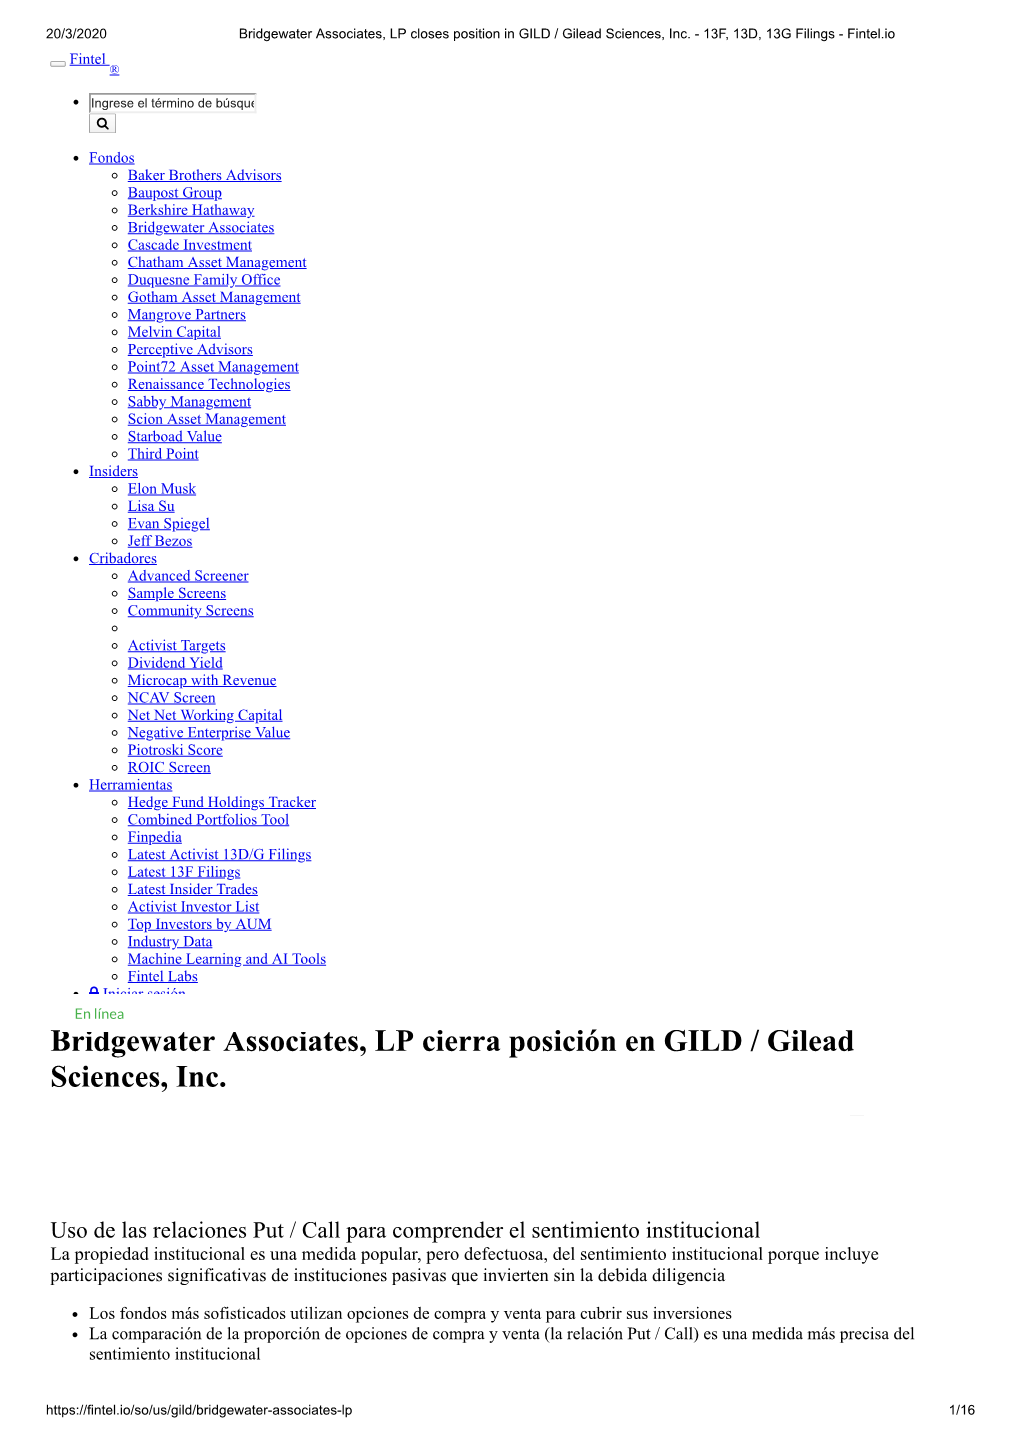 Bridgewater Associates, LP Cierra Posición En GILD / Gilead Sciences, Inc